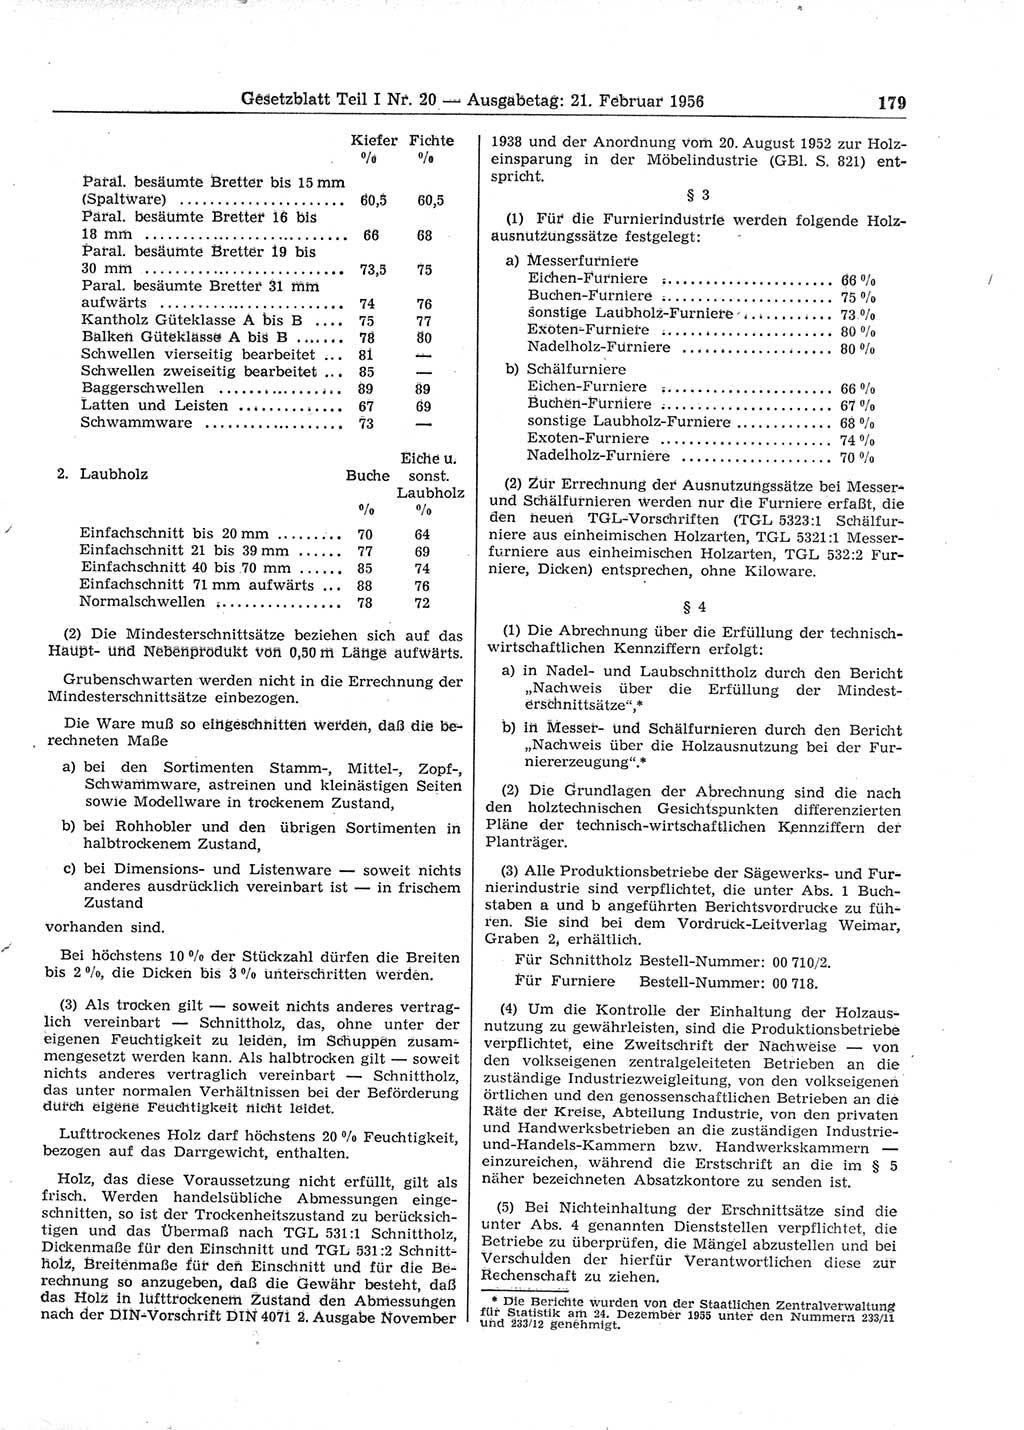 Gesetzblatt (GBl.) der Deutschen Demokratischen Republik (DDR) Teil Ⅰ 1956, Seite 179 (GBl. DDR Ⅰ 1956, S. 179)